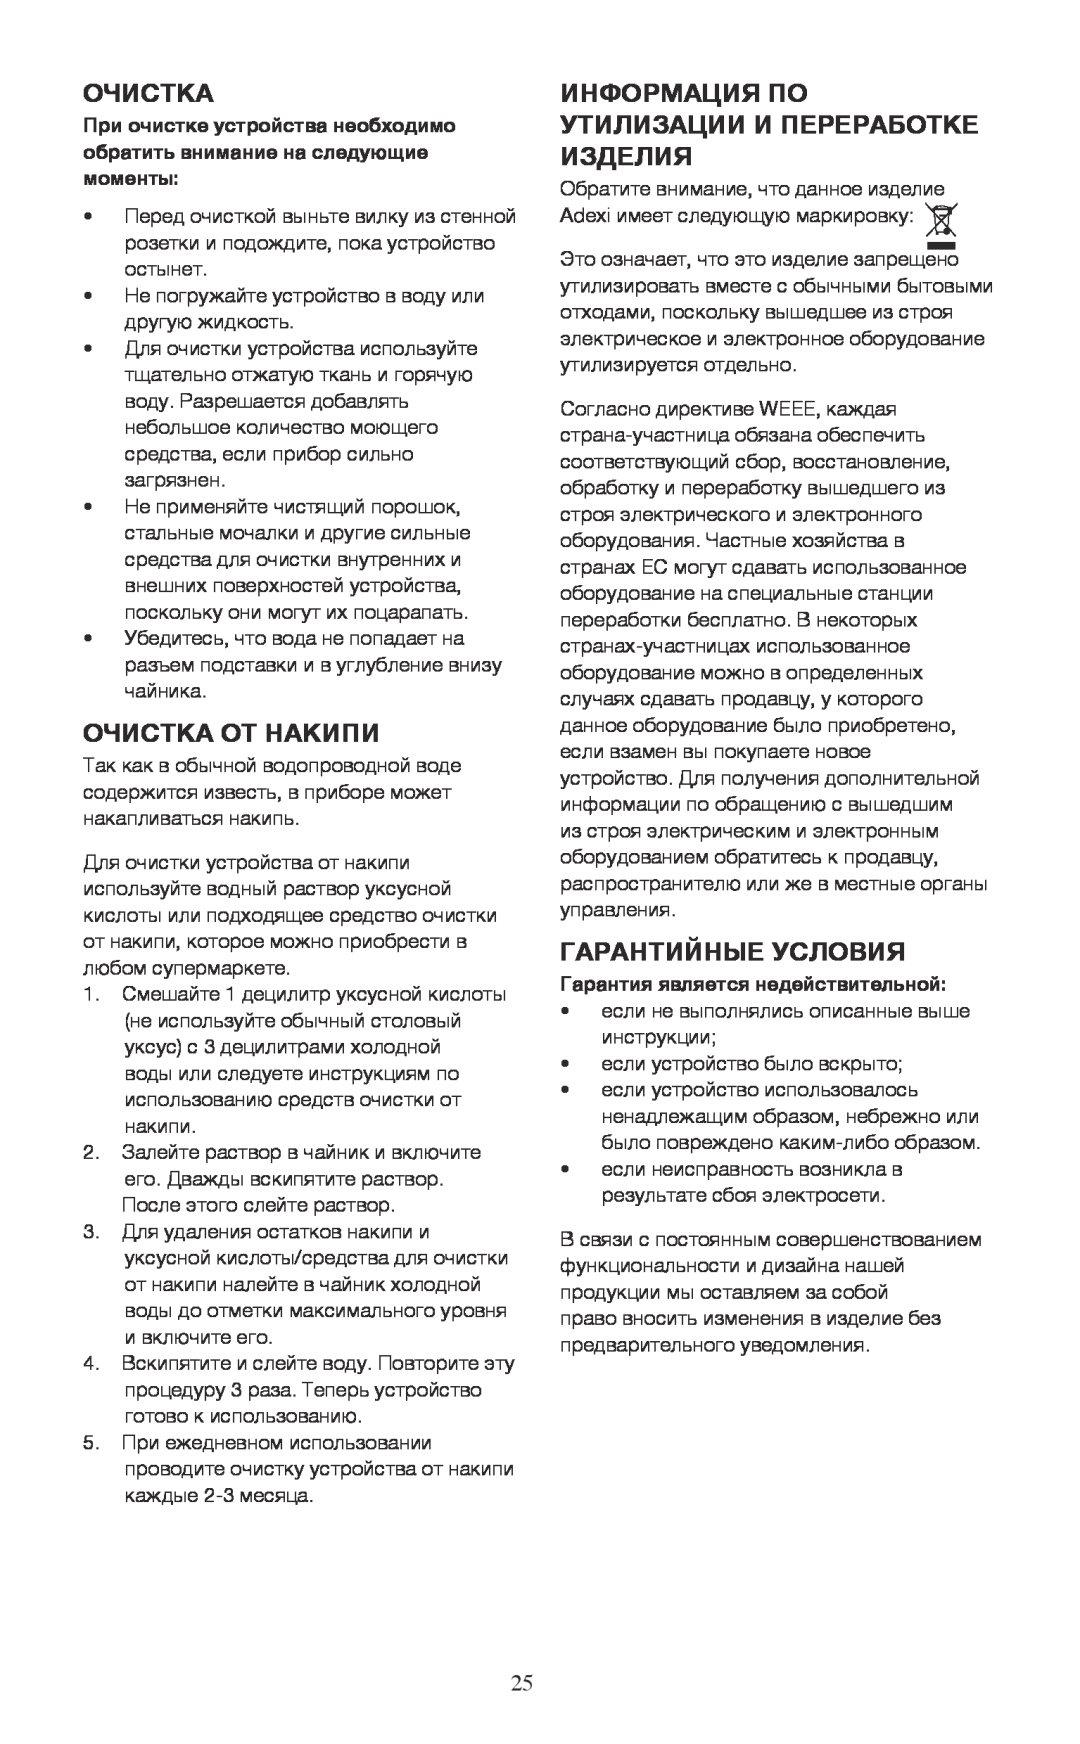 Melissa 745-153 manual Очистка От Накипи, Информация По Утилизации И Переработке Изделия, Гарантийные Условия 